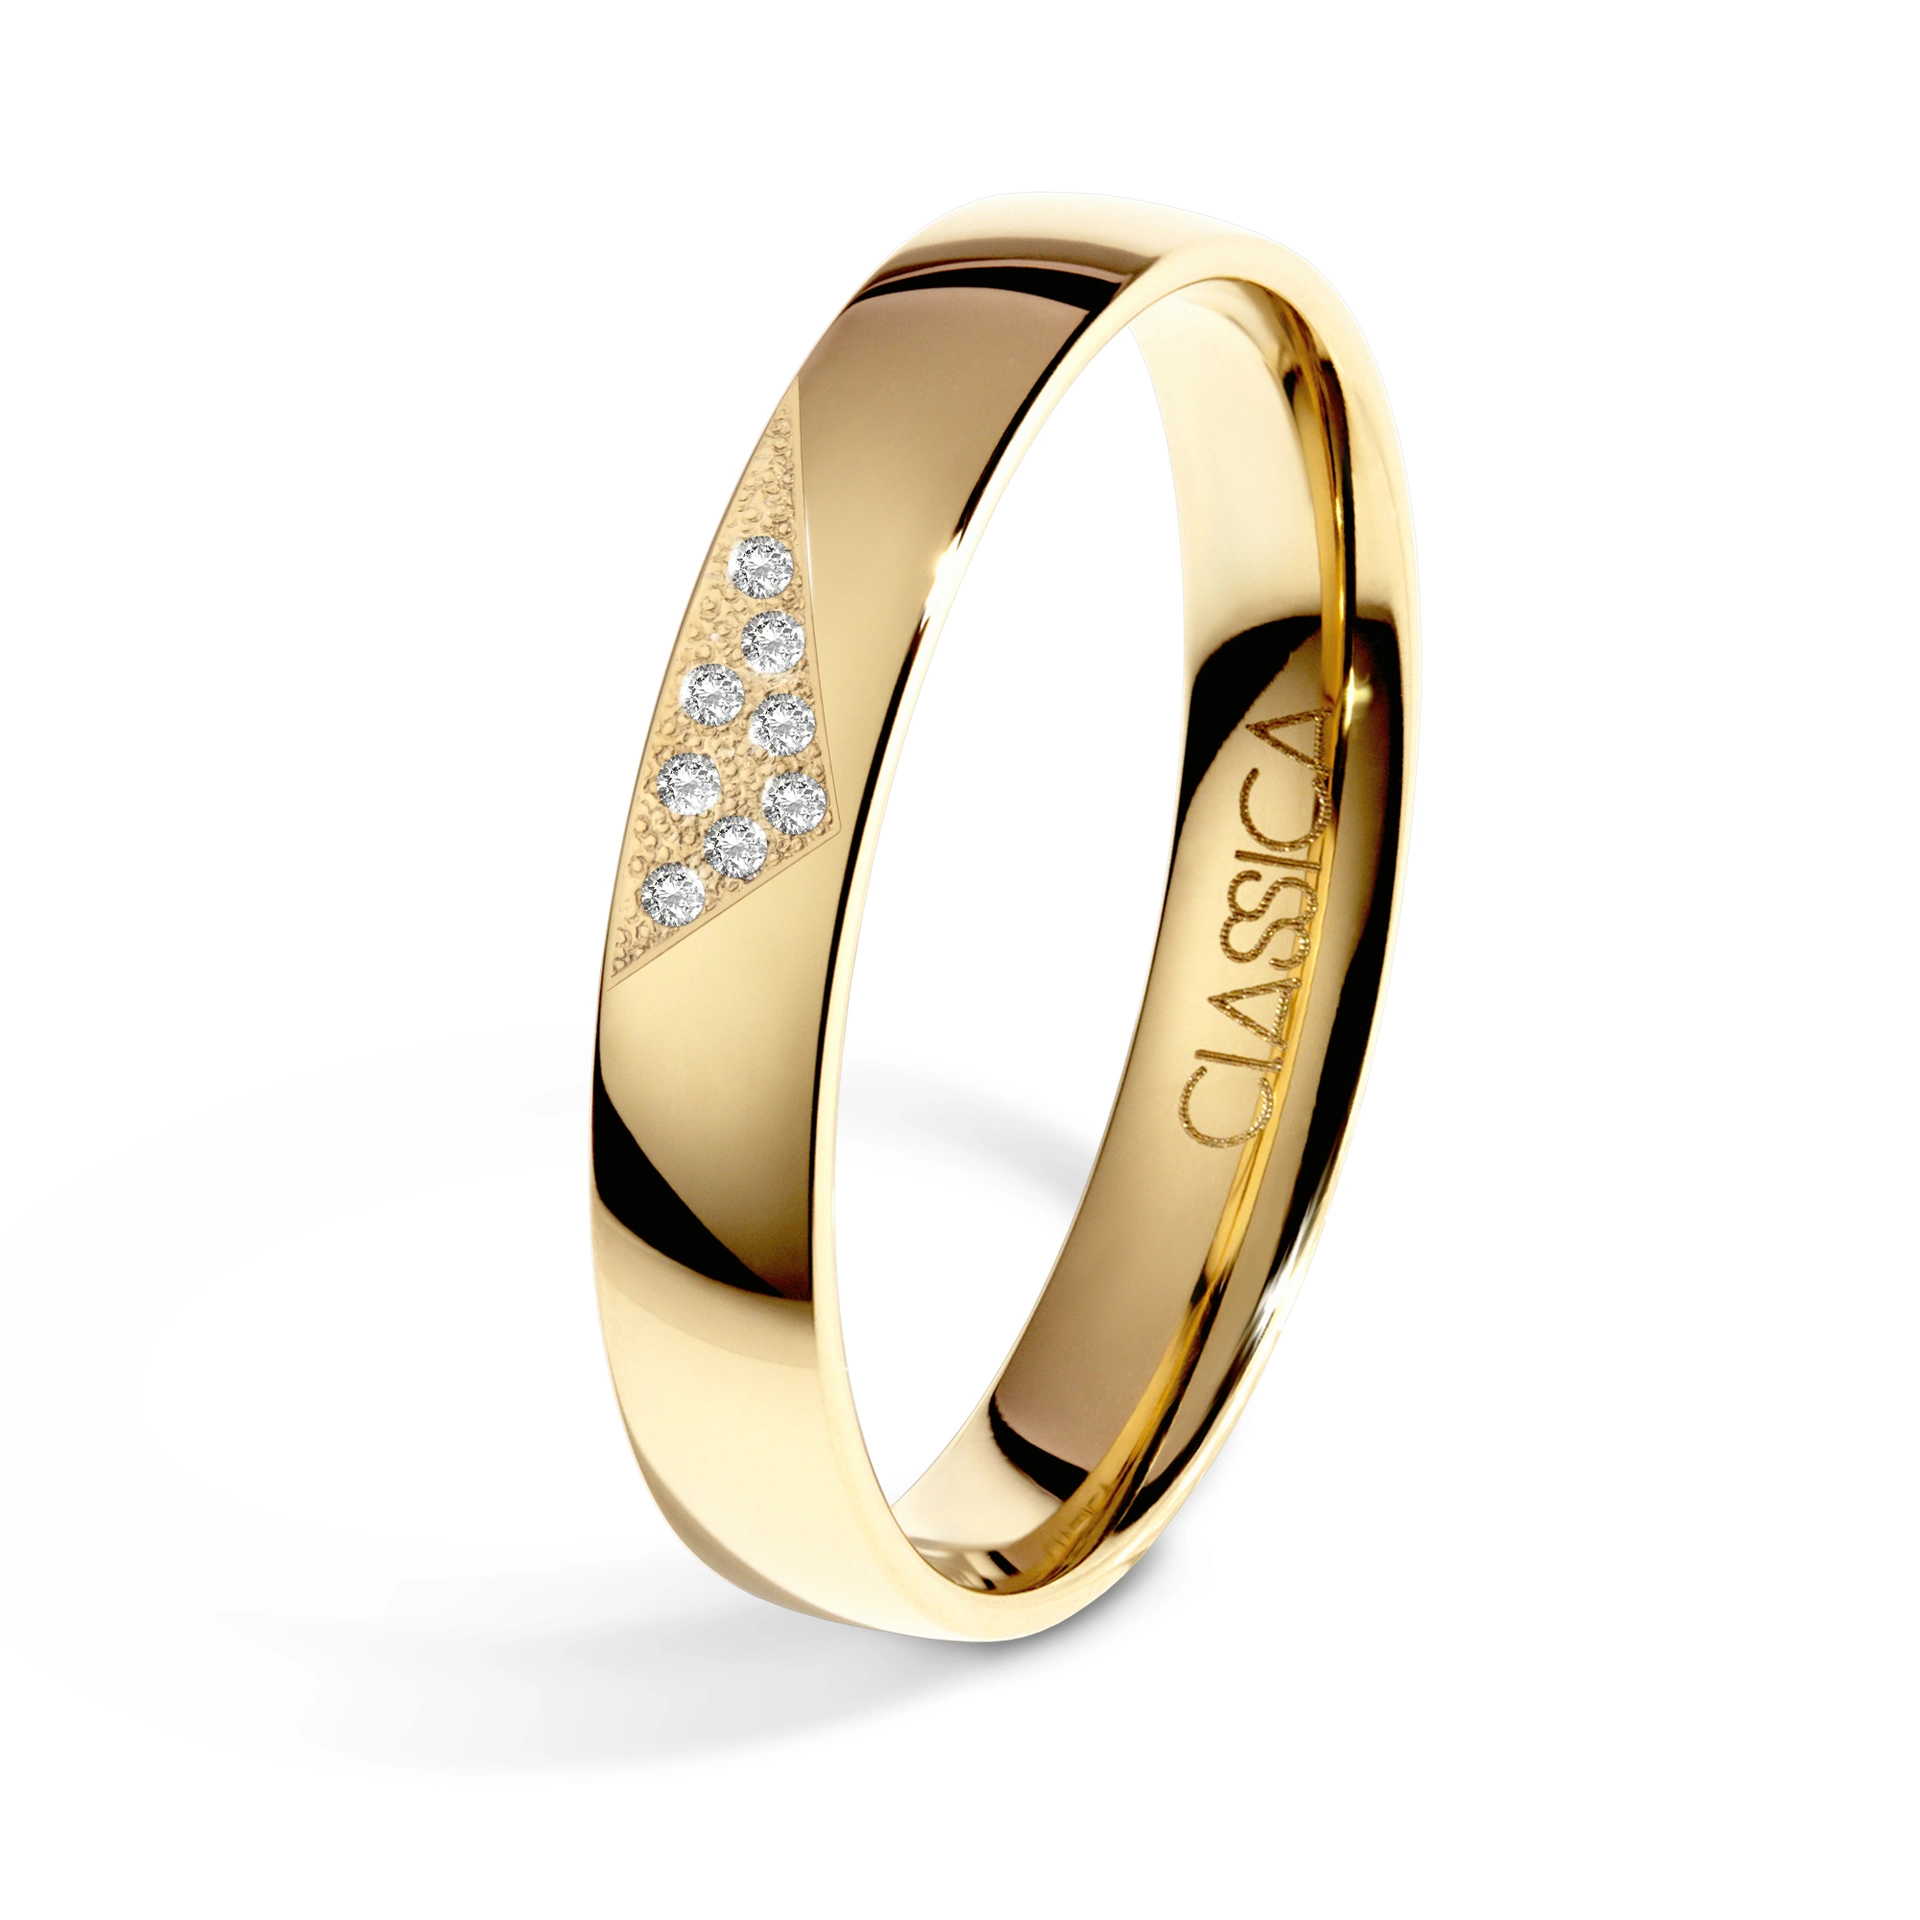 Obrączka ślubna z oprawą diamentów w trójkącie 15-30 dni, Diamenty naturalne, Diamenty laboratoryjne, Żółte złoto, 4 mm, 1,3mm